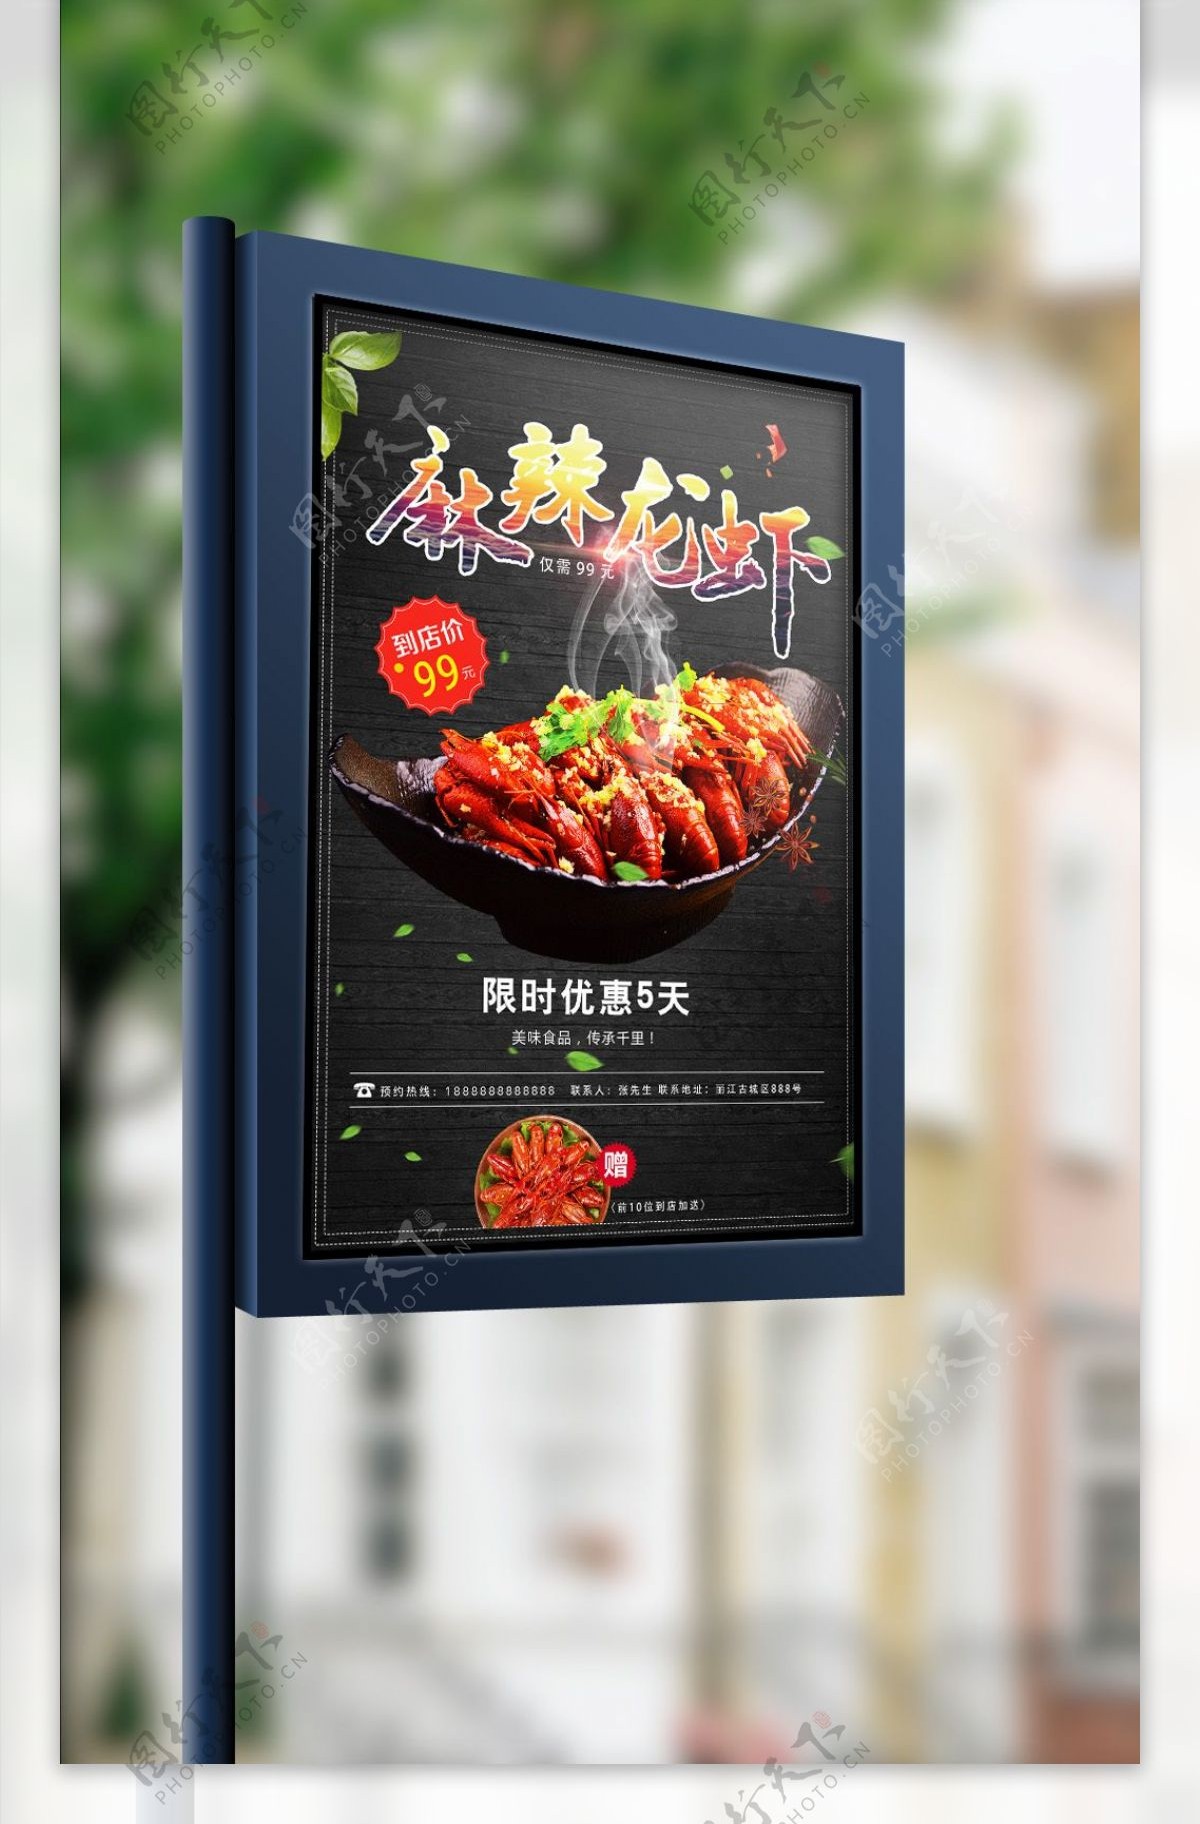 2017年彩色炫酷小龙虾促销海报